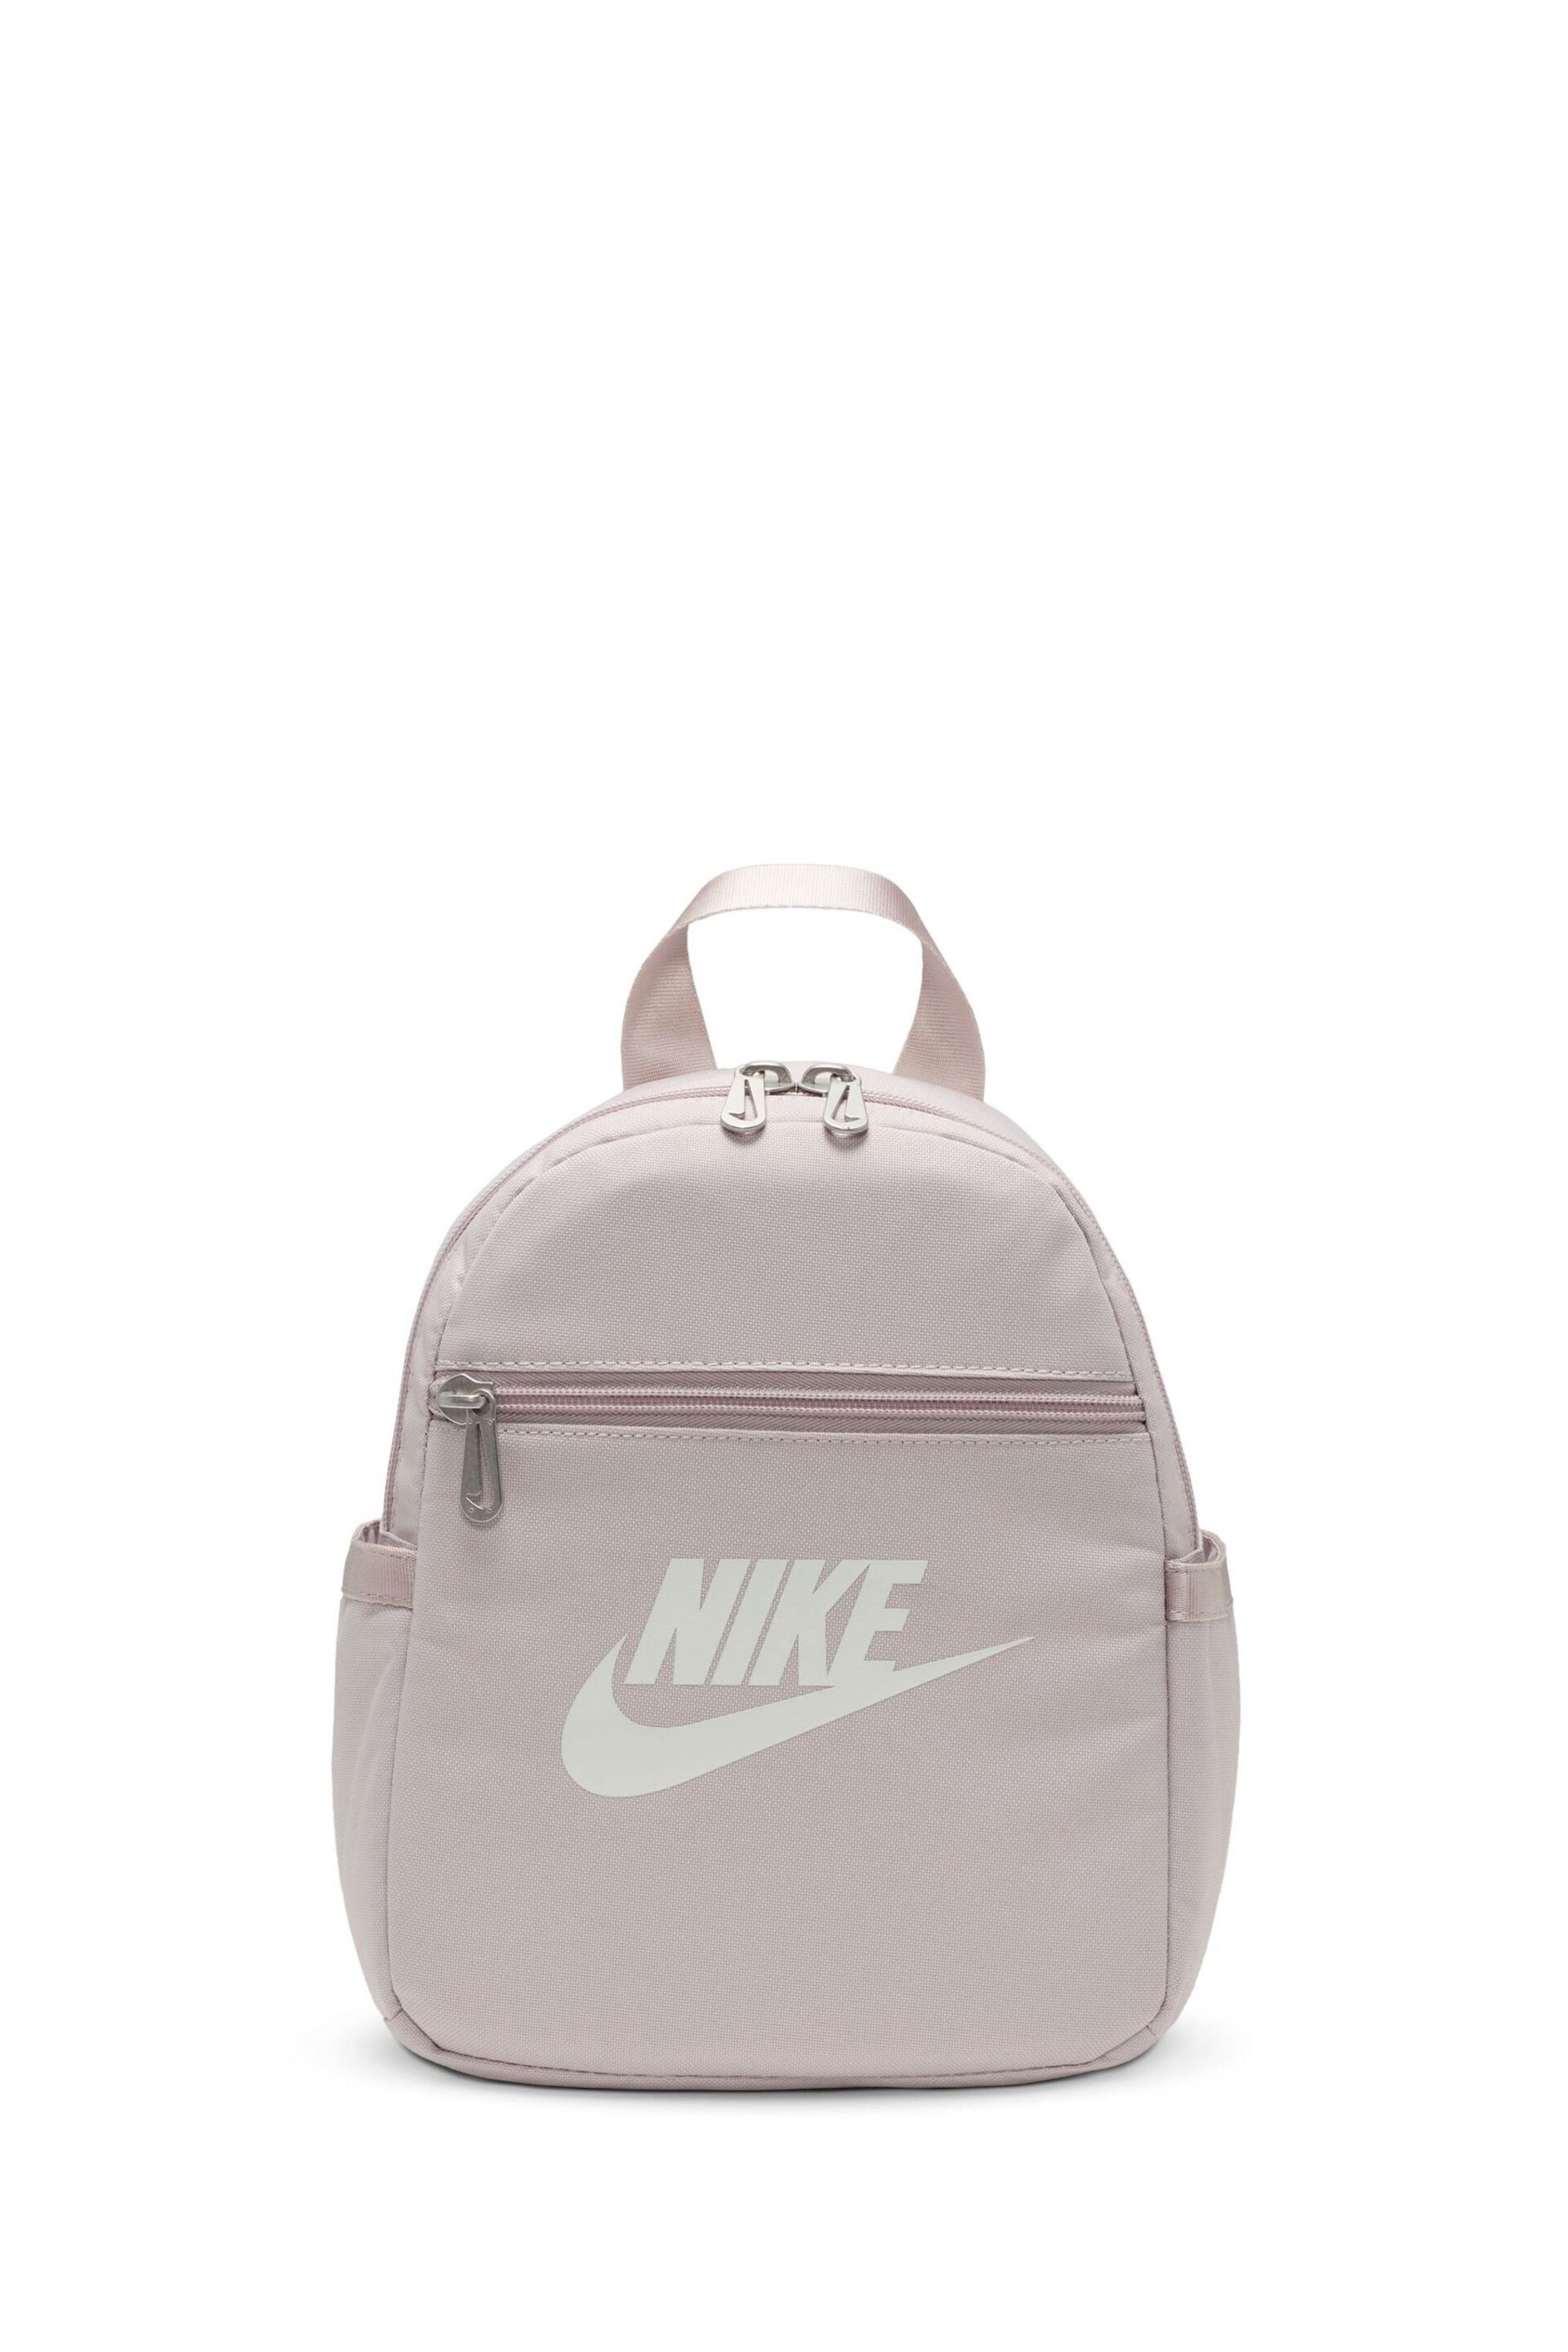 Nike Pink Mini Womens 6L Backpack - Image 5 of 12